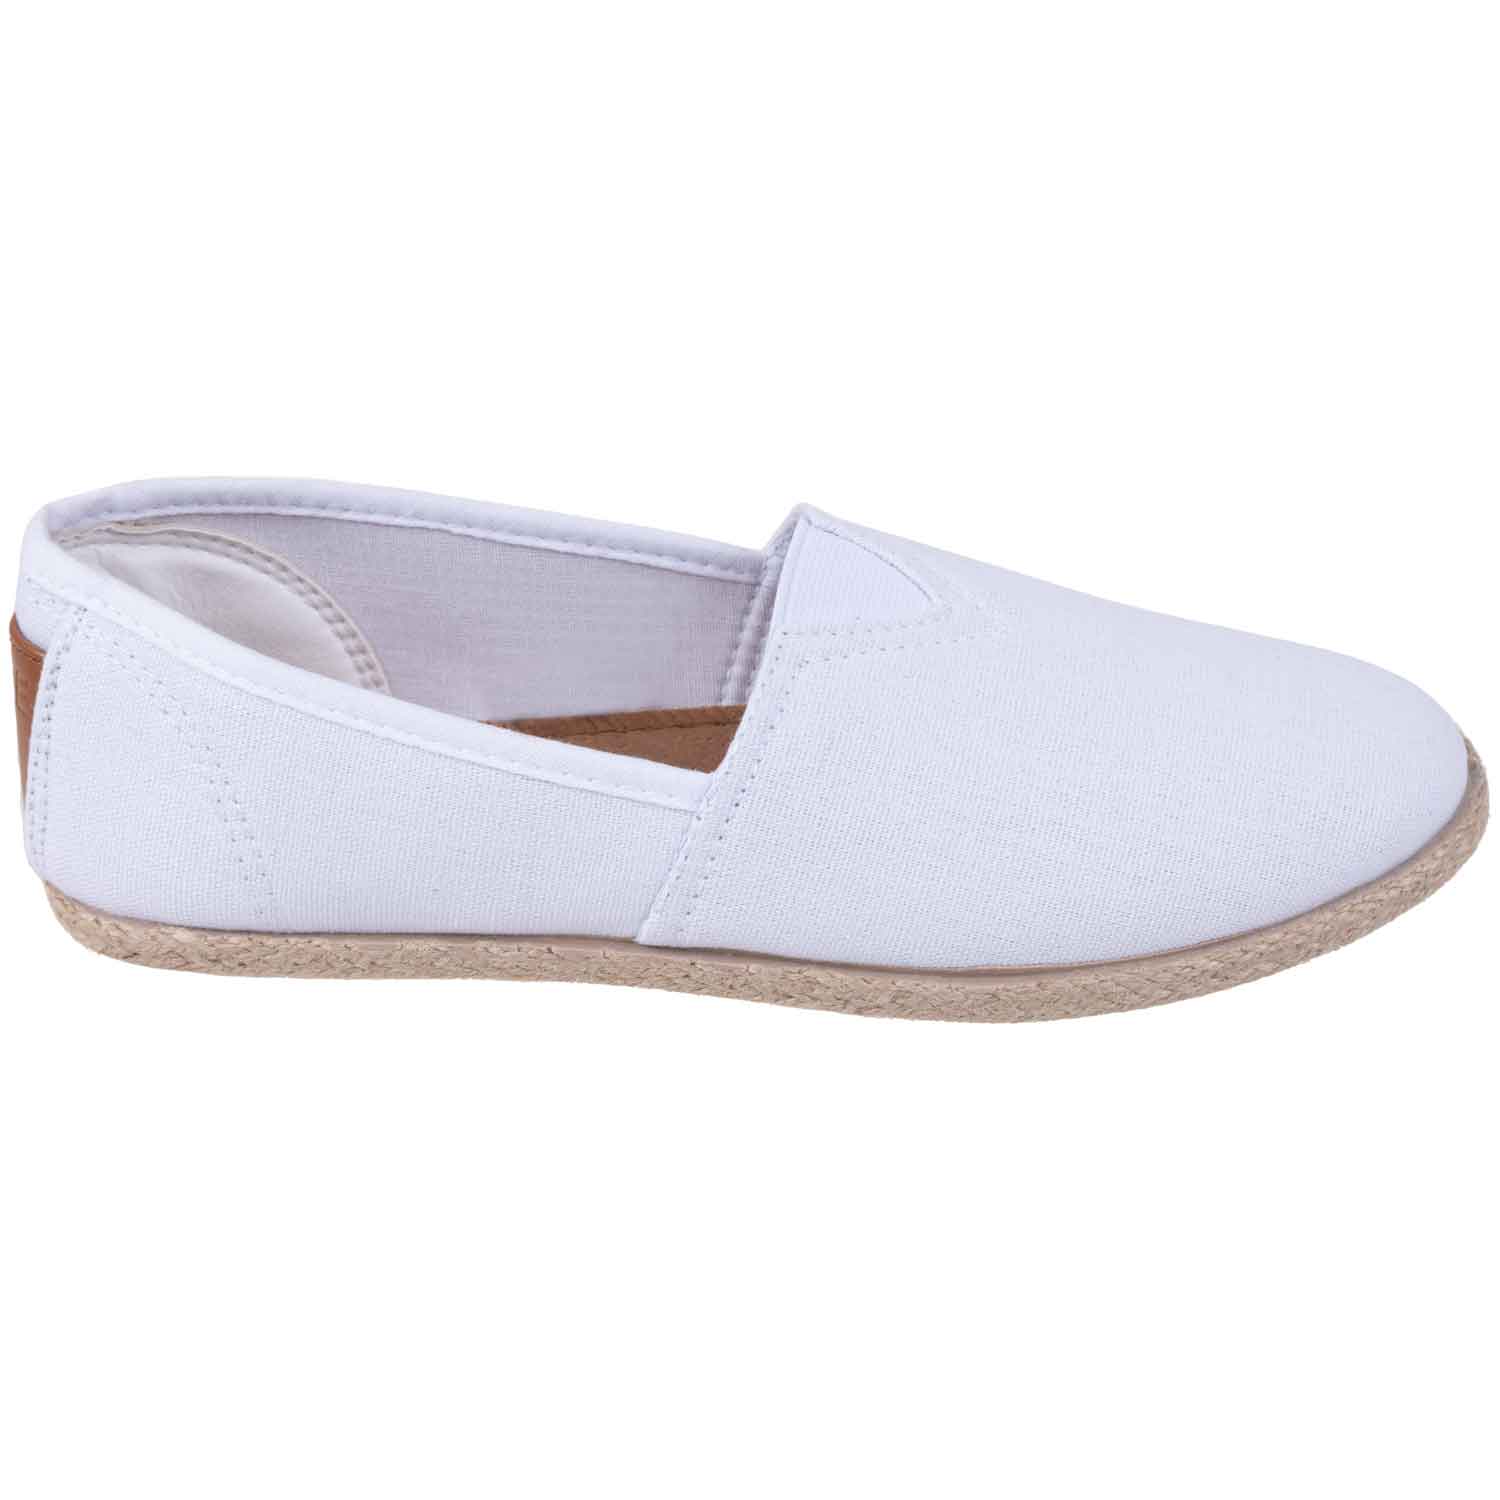 Round toe canvas slip-on esparilles - White, size 6. Colour: white. Size: 6